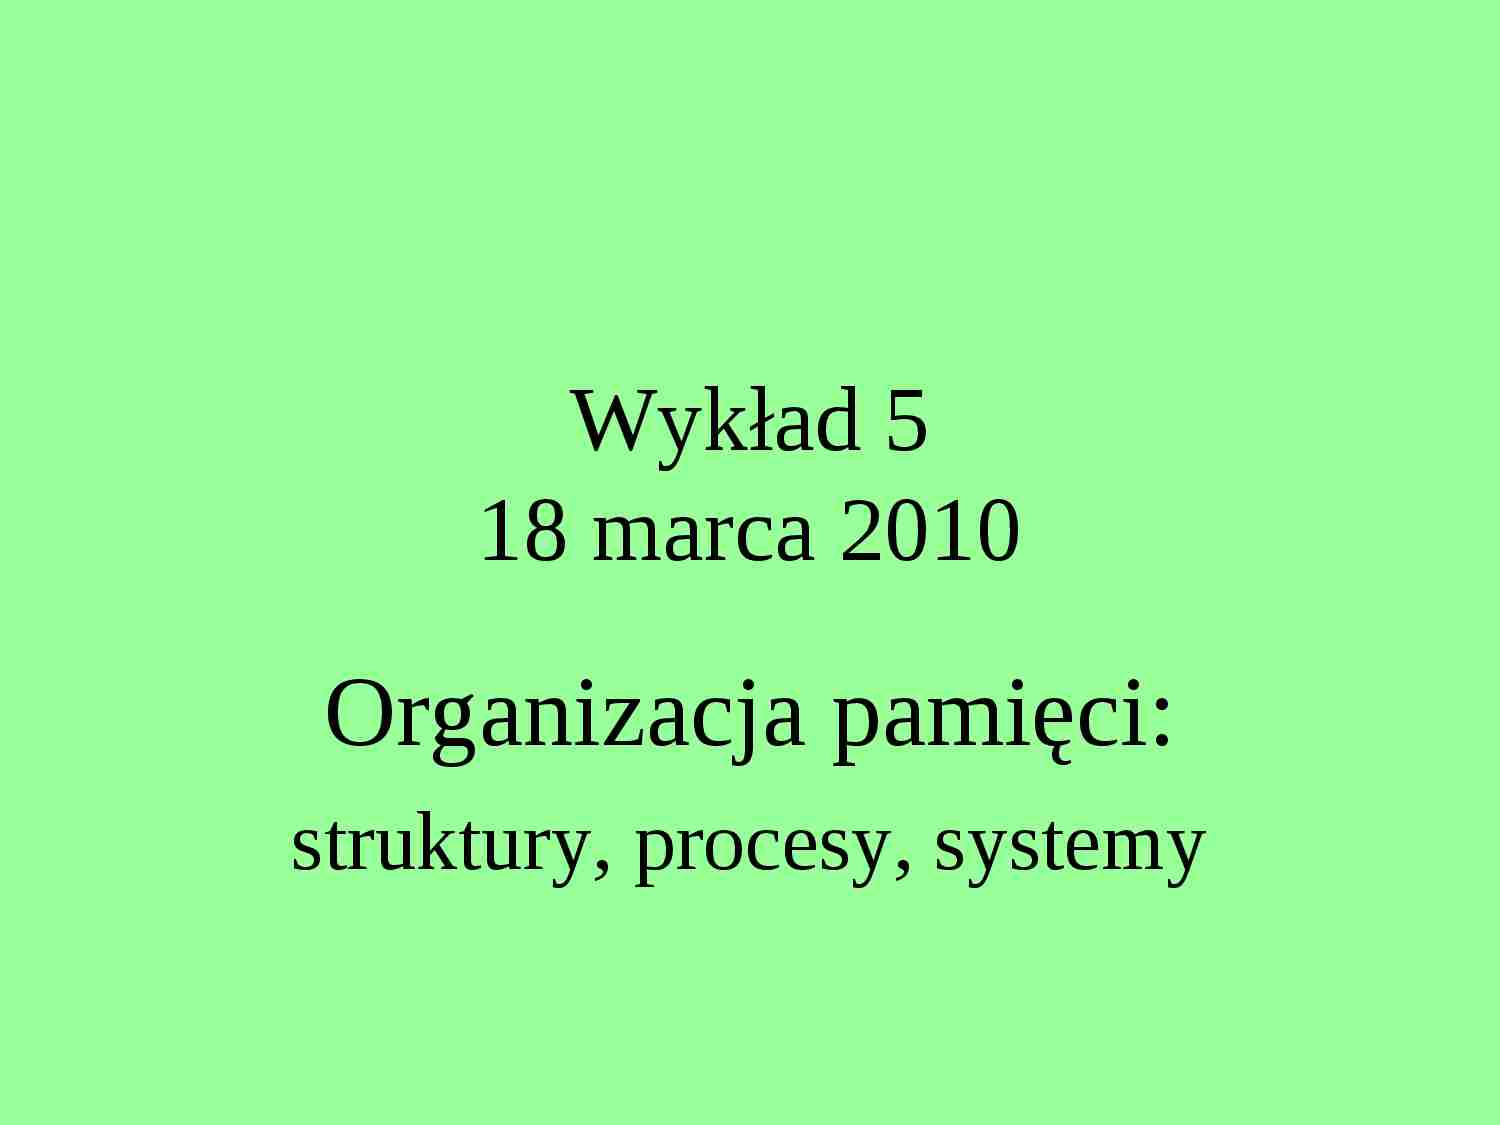 Organizacja pamięci: struktury, procesy, systemy-opracowanie - strona 1